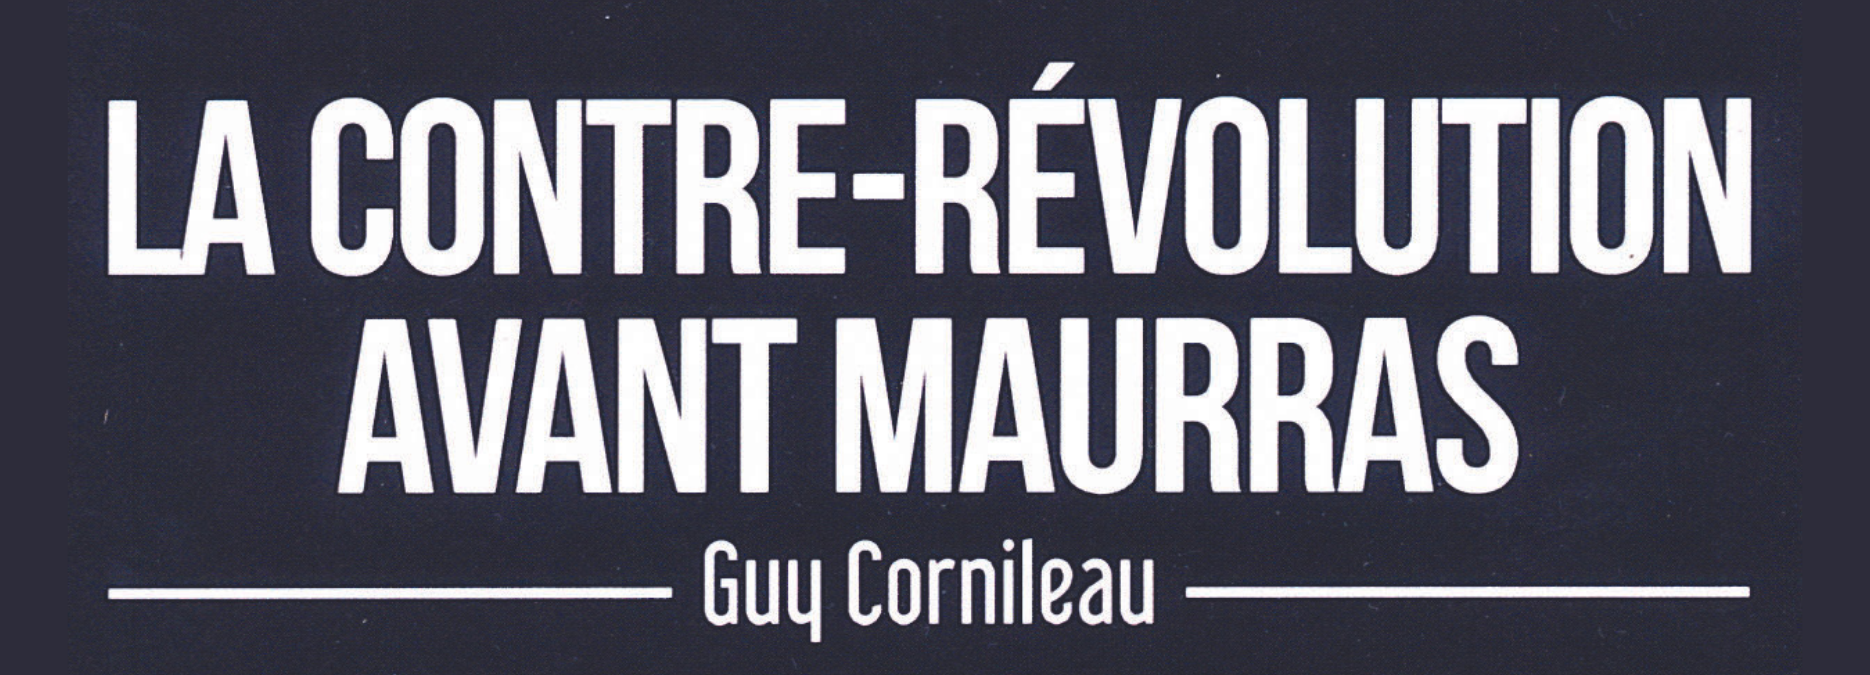 La Contre-révolution avant Maurras, par Guy Cornileau